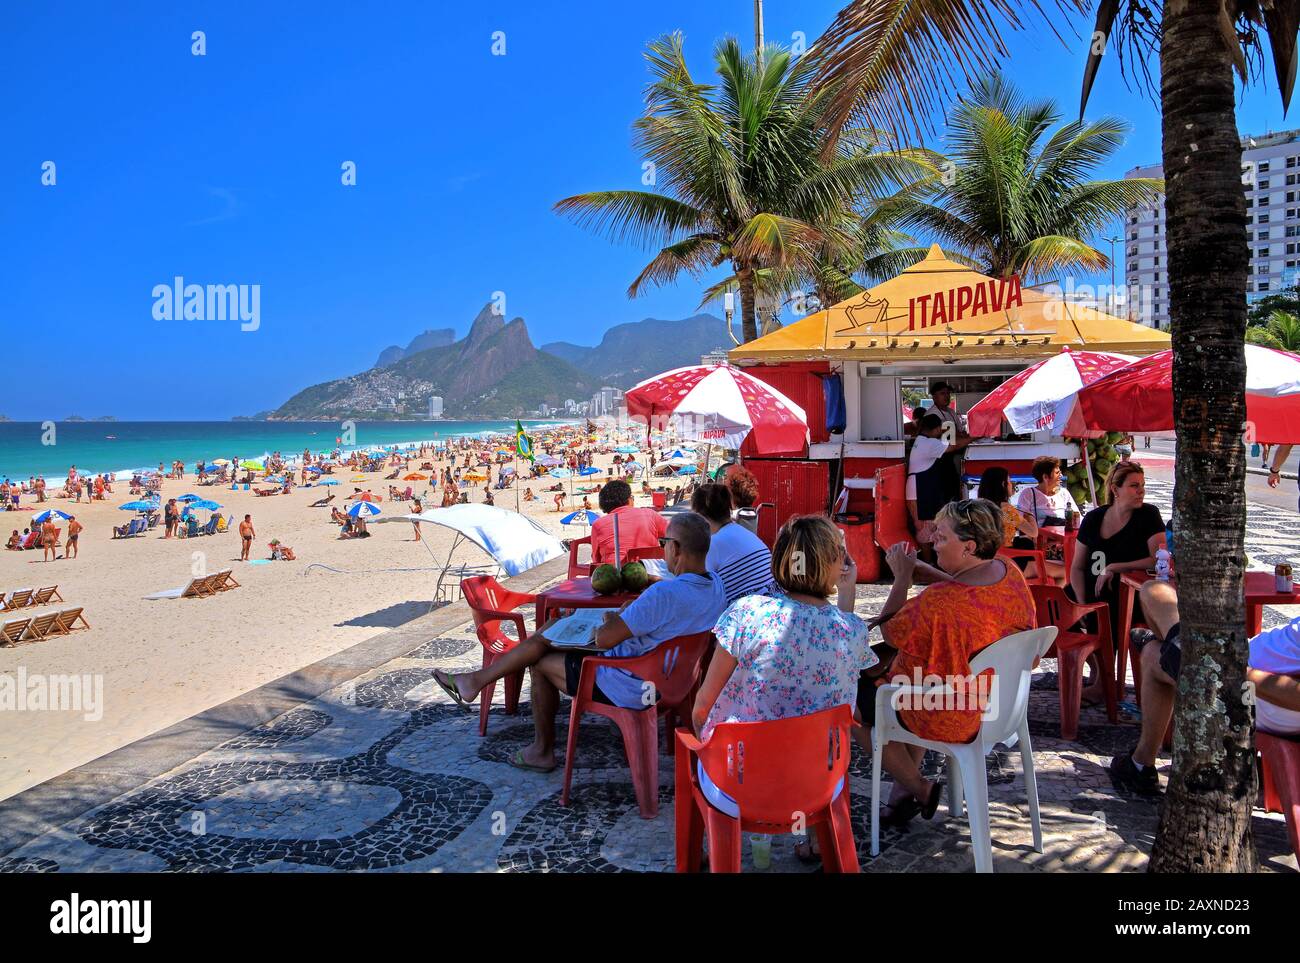 Bar de plage sur la promenade d'Ipanema, Rio de Janeiro, Brésil Banque D'Images